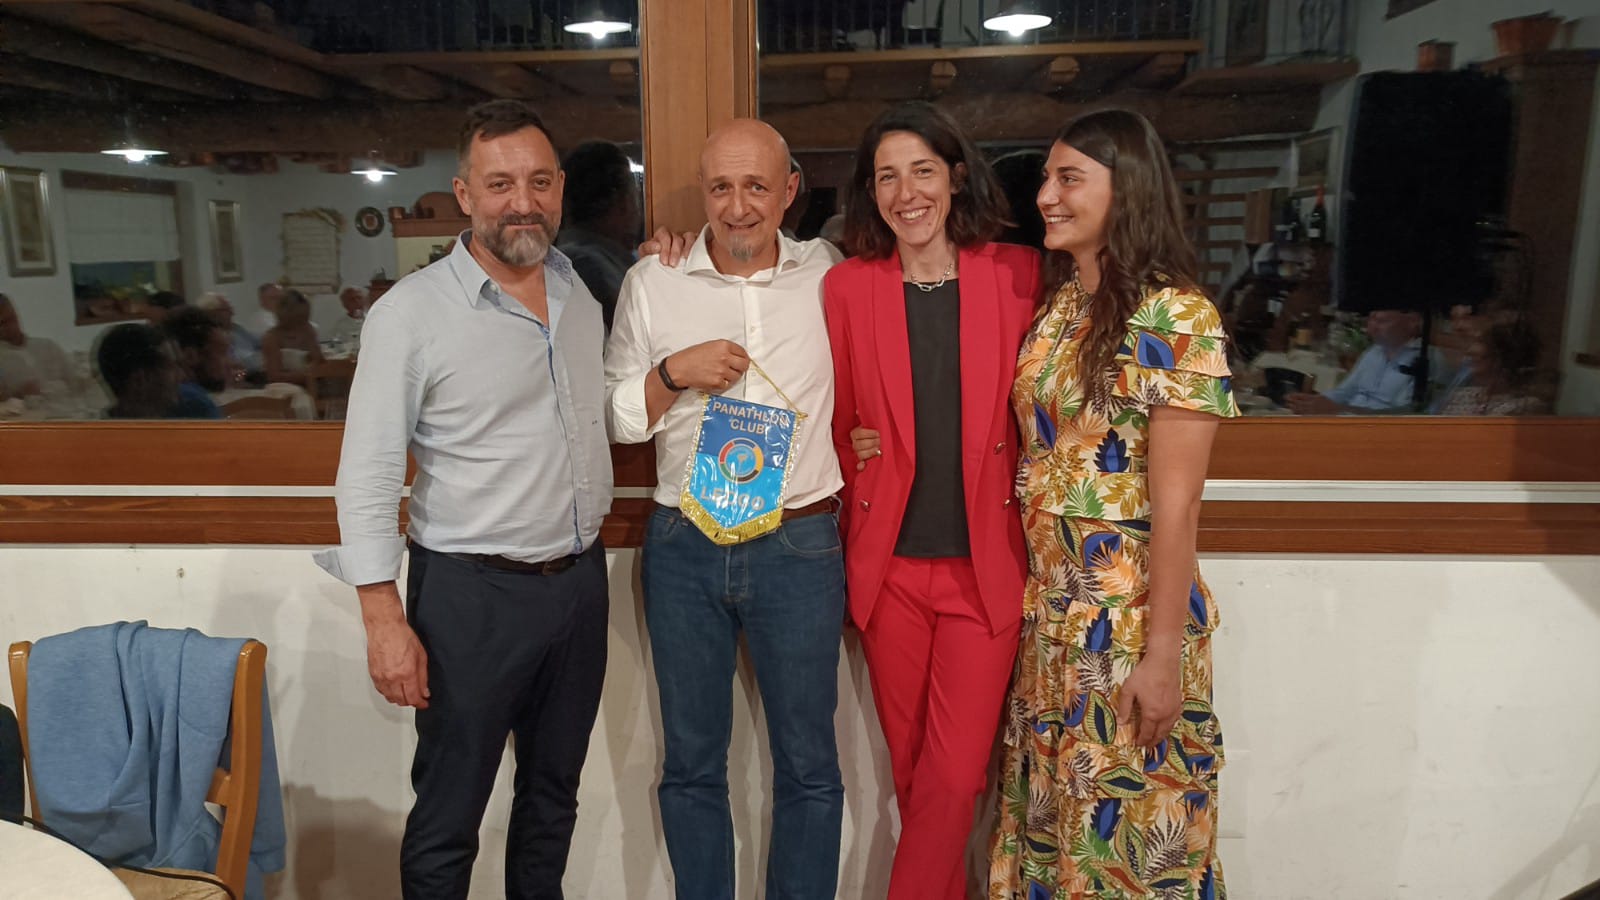 da sinistra Andrea Mauri, Fabrizio "Bicio" Ranieri, Masha Maiorano e Giulia Valsecchi